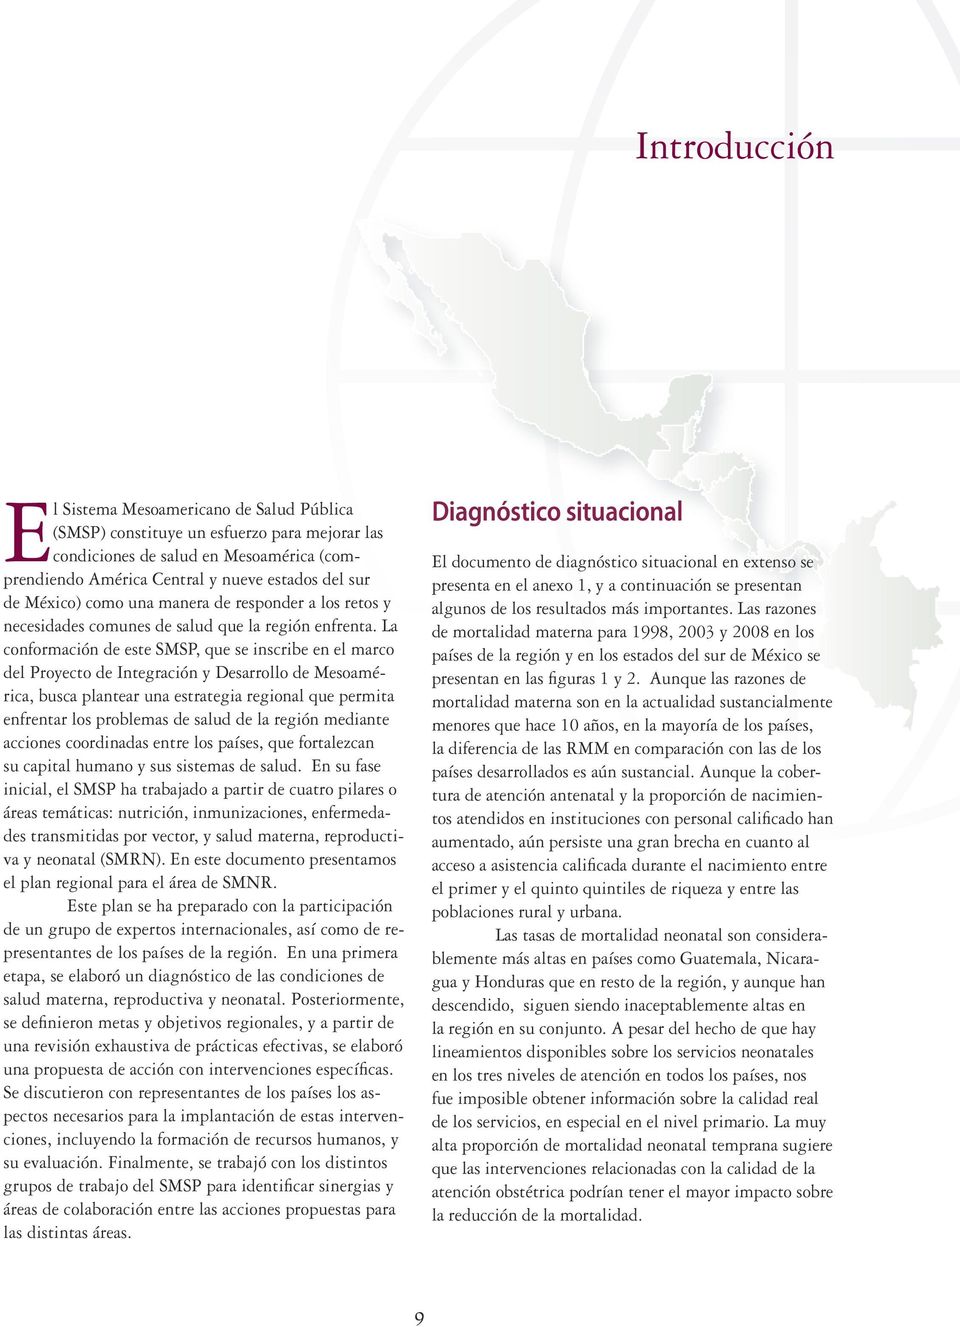 La conformación de este SMSP, que se inscribe en el marco del Proyecto de Integración y Desarrollo de Mesoamérica, busca plantear una estrategia regional que permita enfrentar los problemas de salud